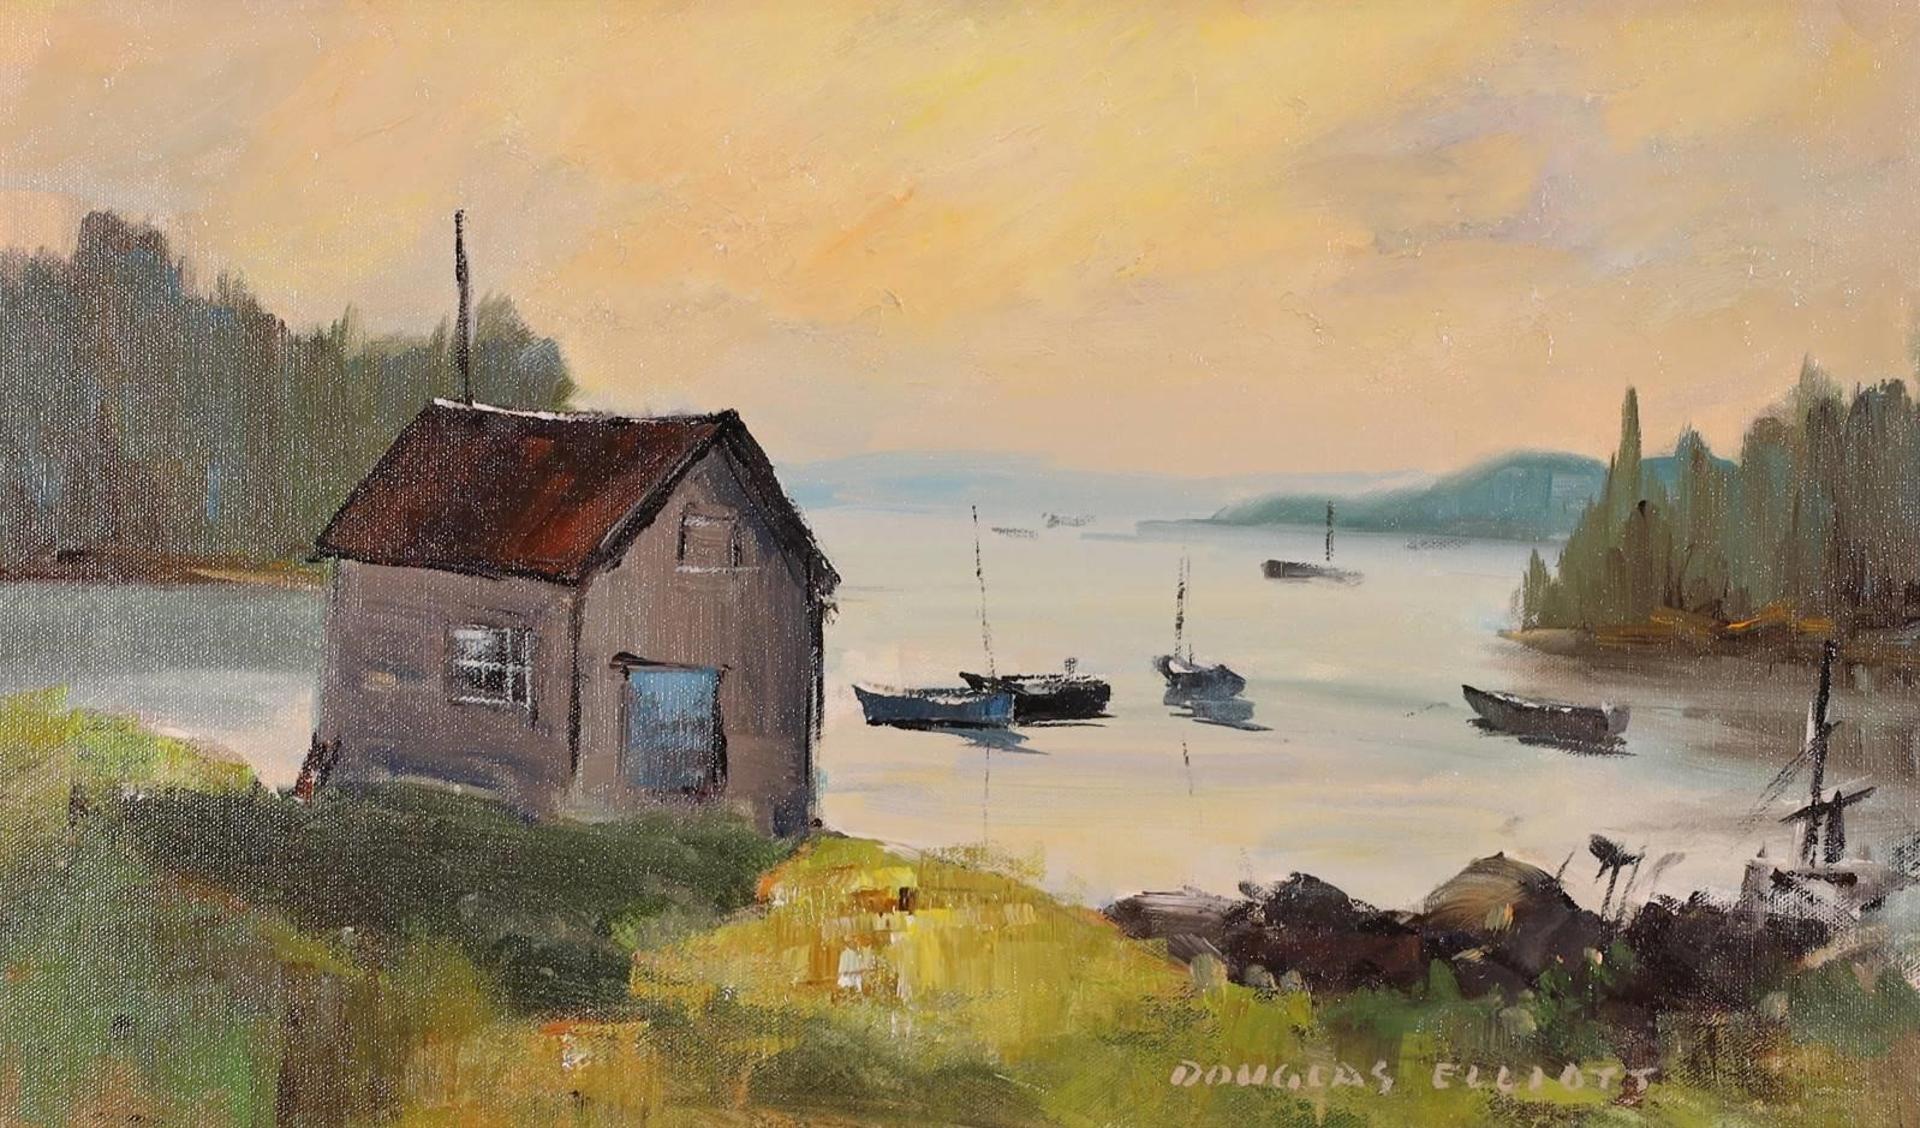 Douglas Ferfguson Elliott (1916-2012) - Quiet Cover, Boutiliers Cove, N.S